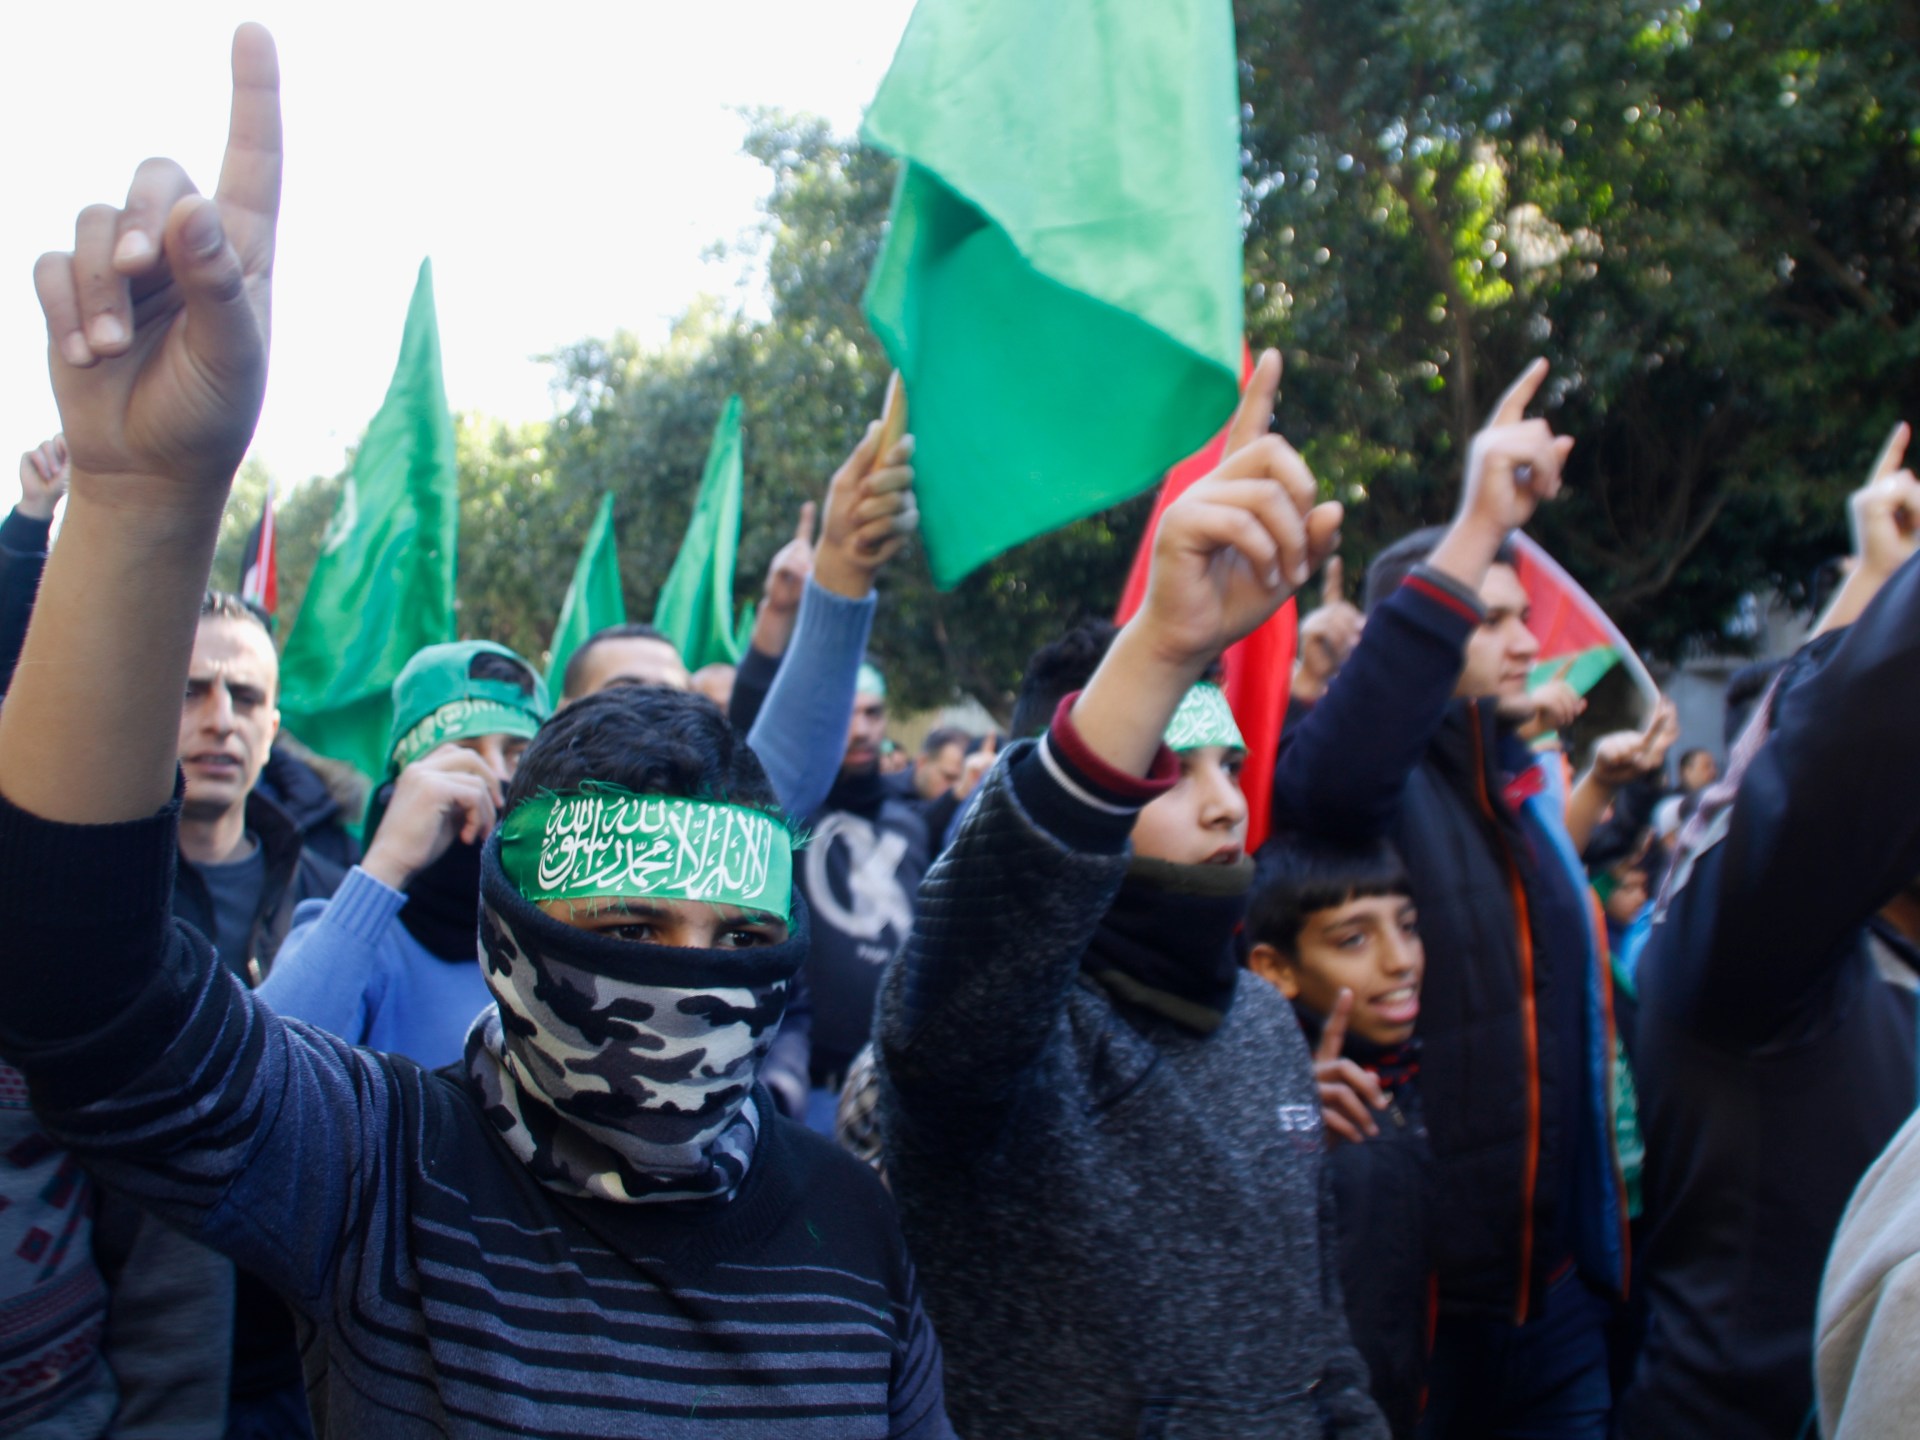 بعد اعتقال قيادات من حماس بالضفة.. هل يبدأ الاحتلال موجة اغتيالات؟ | سياسة – البوكس نيوز